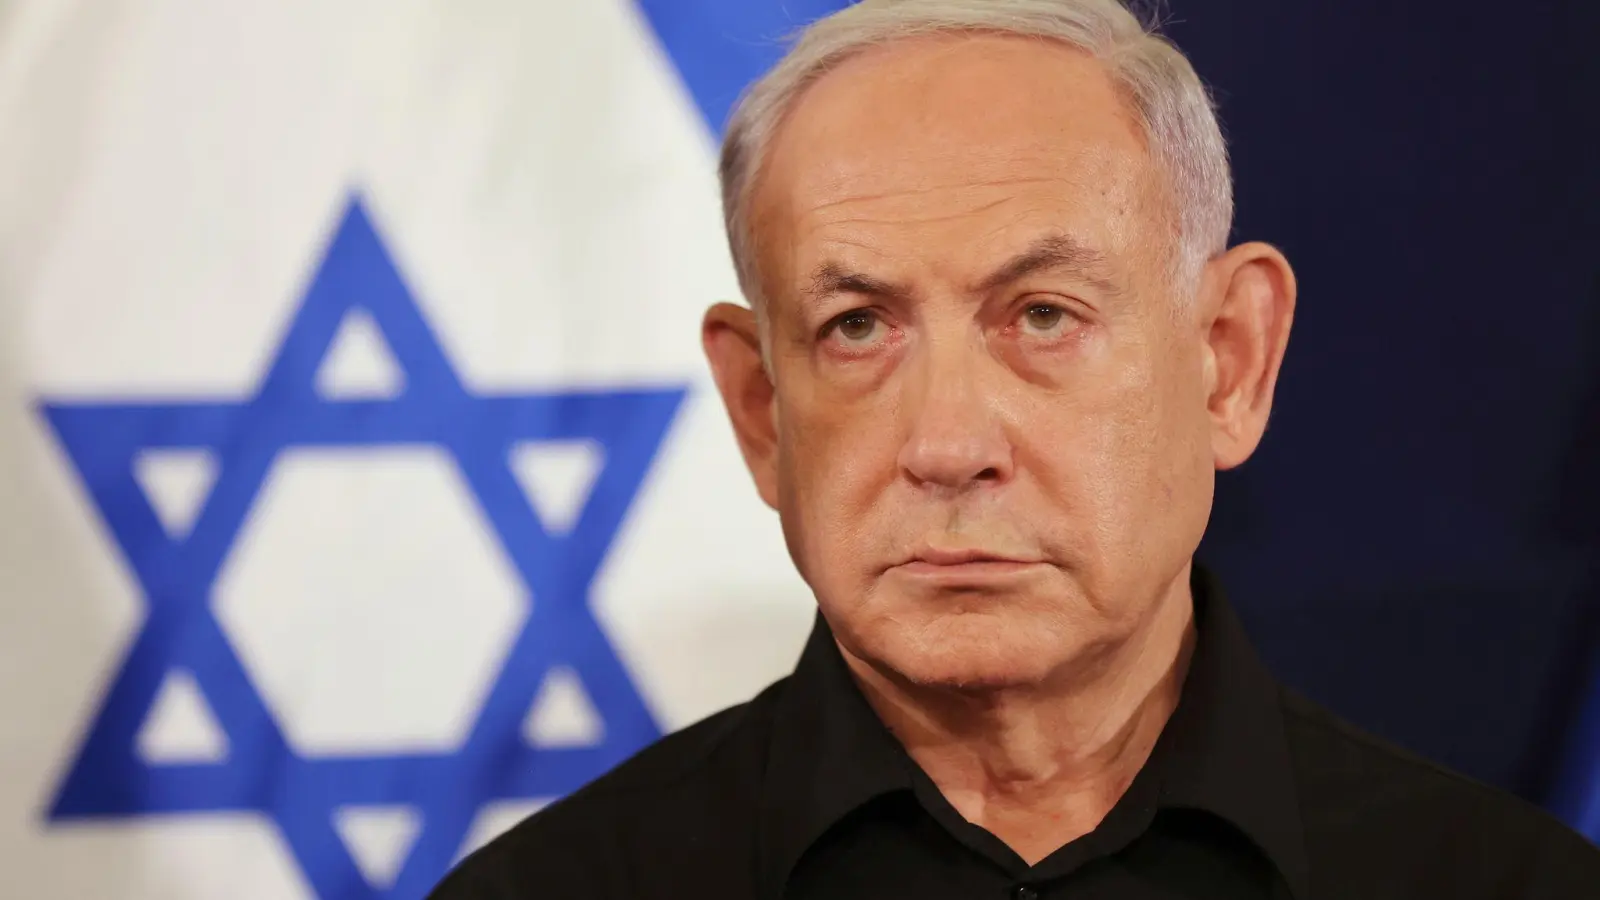 Der istaelische Ministerpräsident Benjamin Netanjahu muss sich wieder vor Gericht verantworten. (Foto: Abir Sultan/Pool European Pressphoto Agency/AP/dpa)